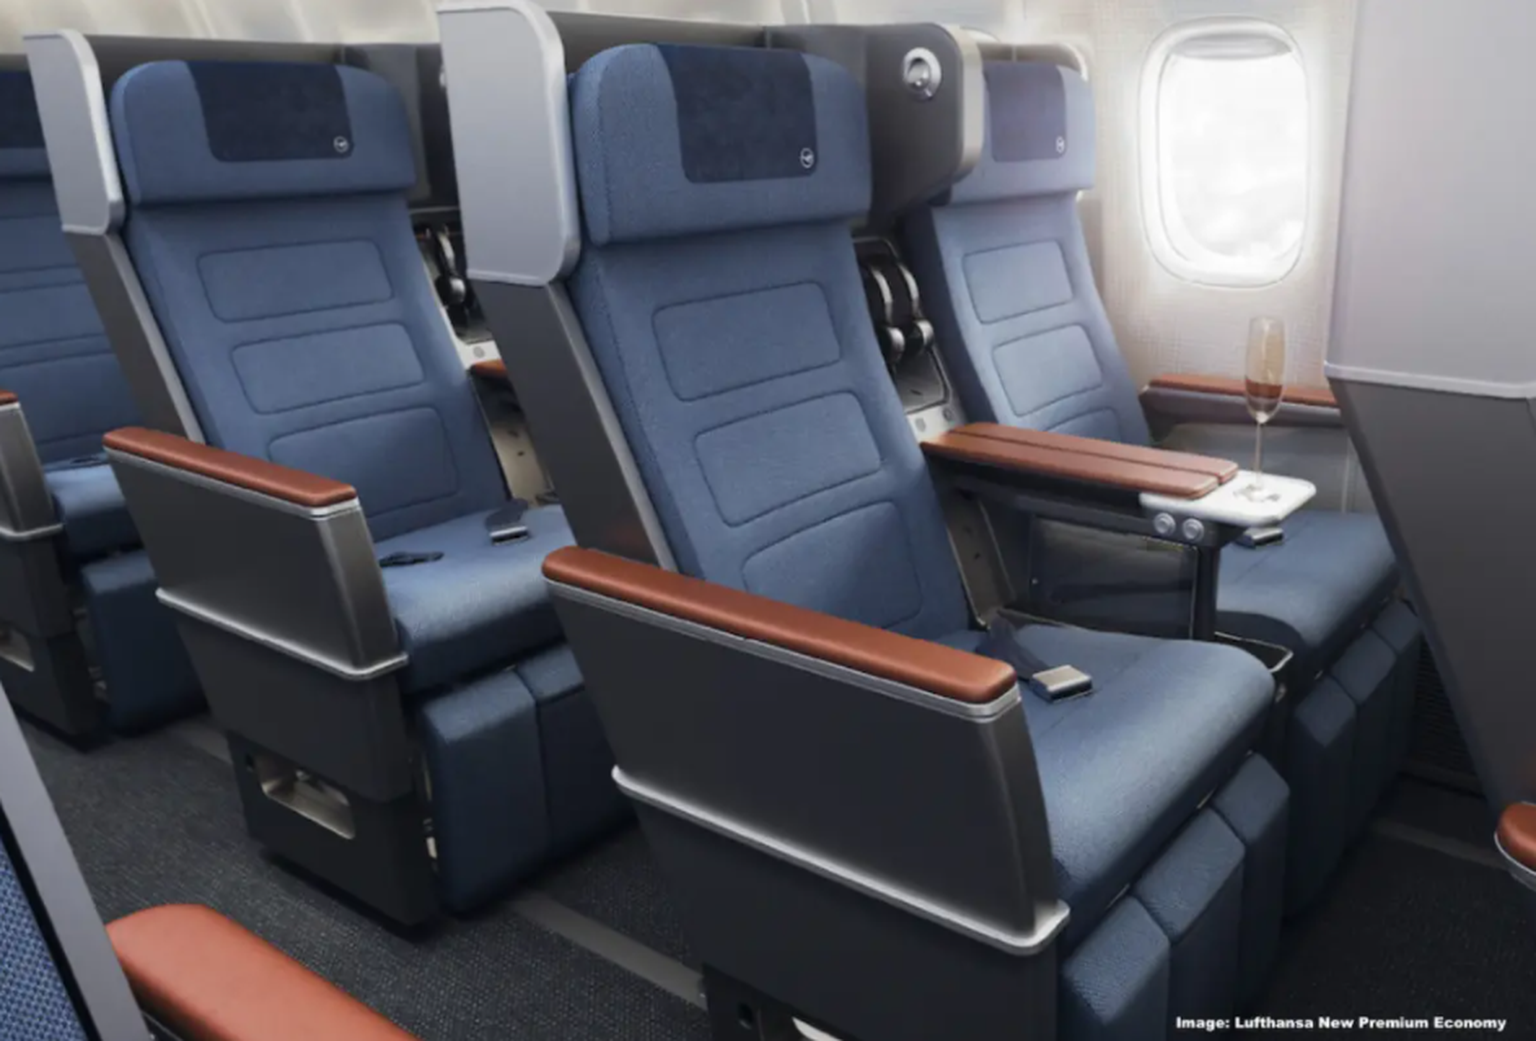 Lufthansa uues Premium Economy klassis saavad istmed asetsema kestakestes, mis takistavad tagapool istujale langetatud seljatoega sülle vajumist.